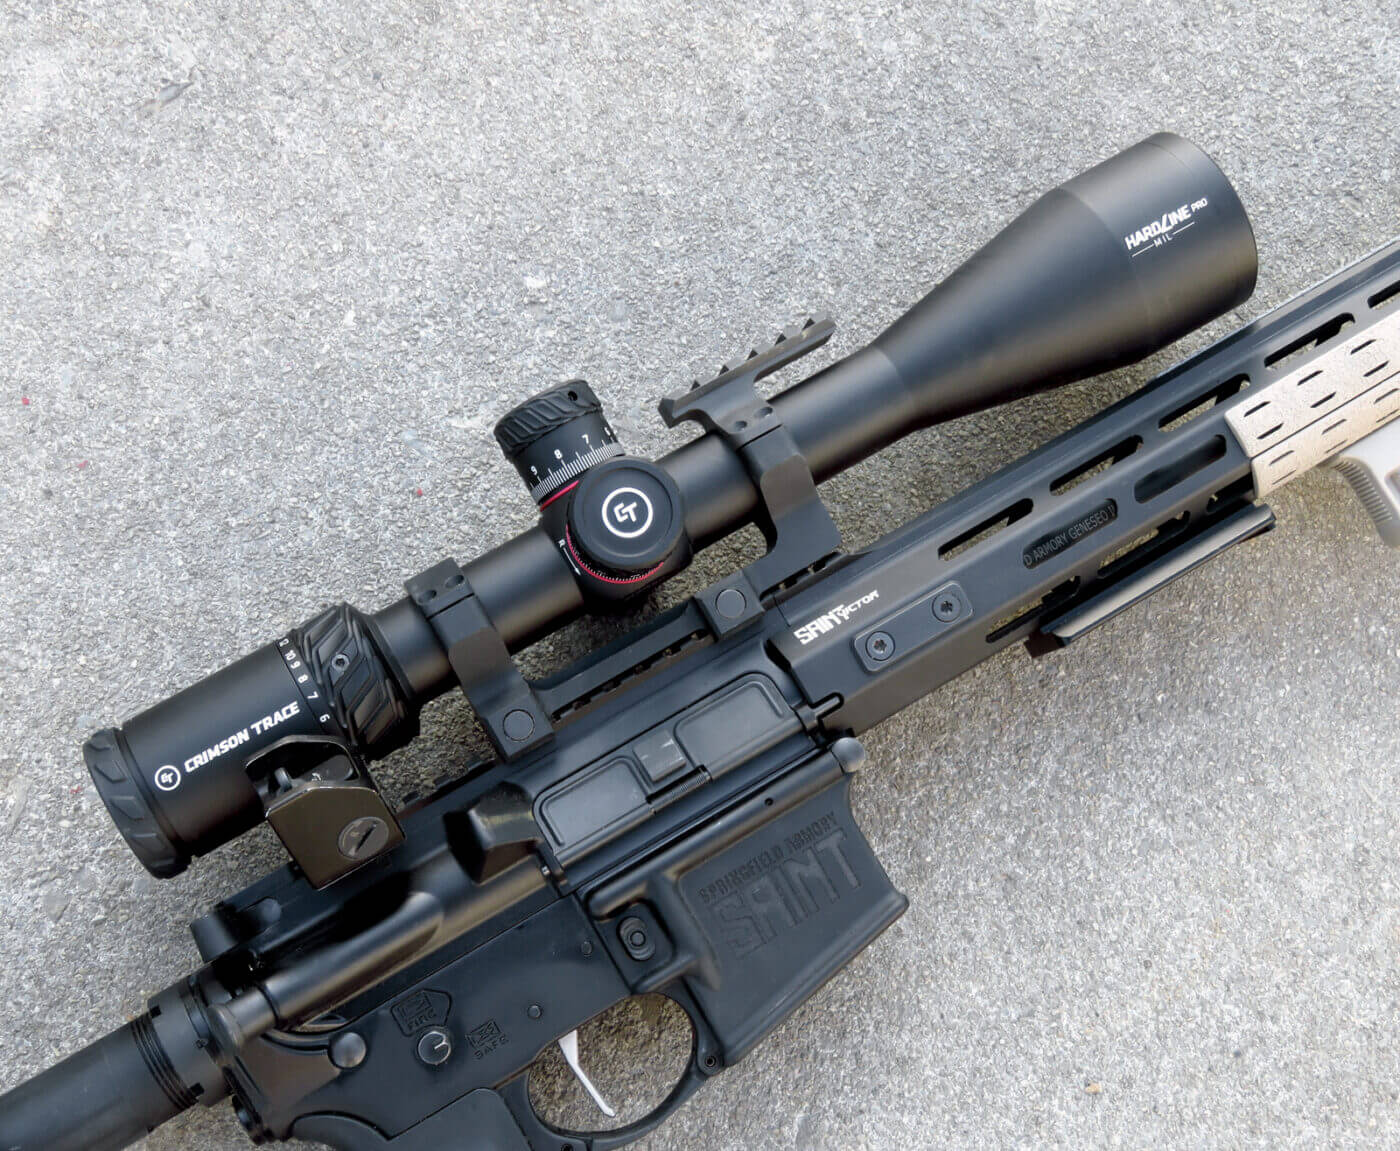 Right side profile of Crimson Trace Hardline Pro scope on SAINT rifle